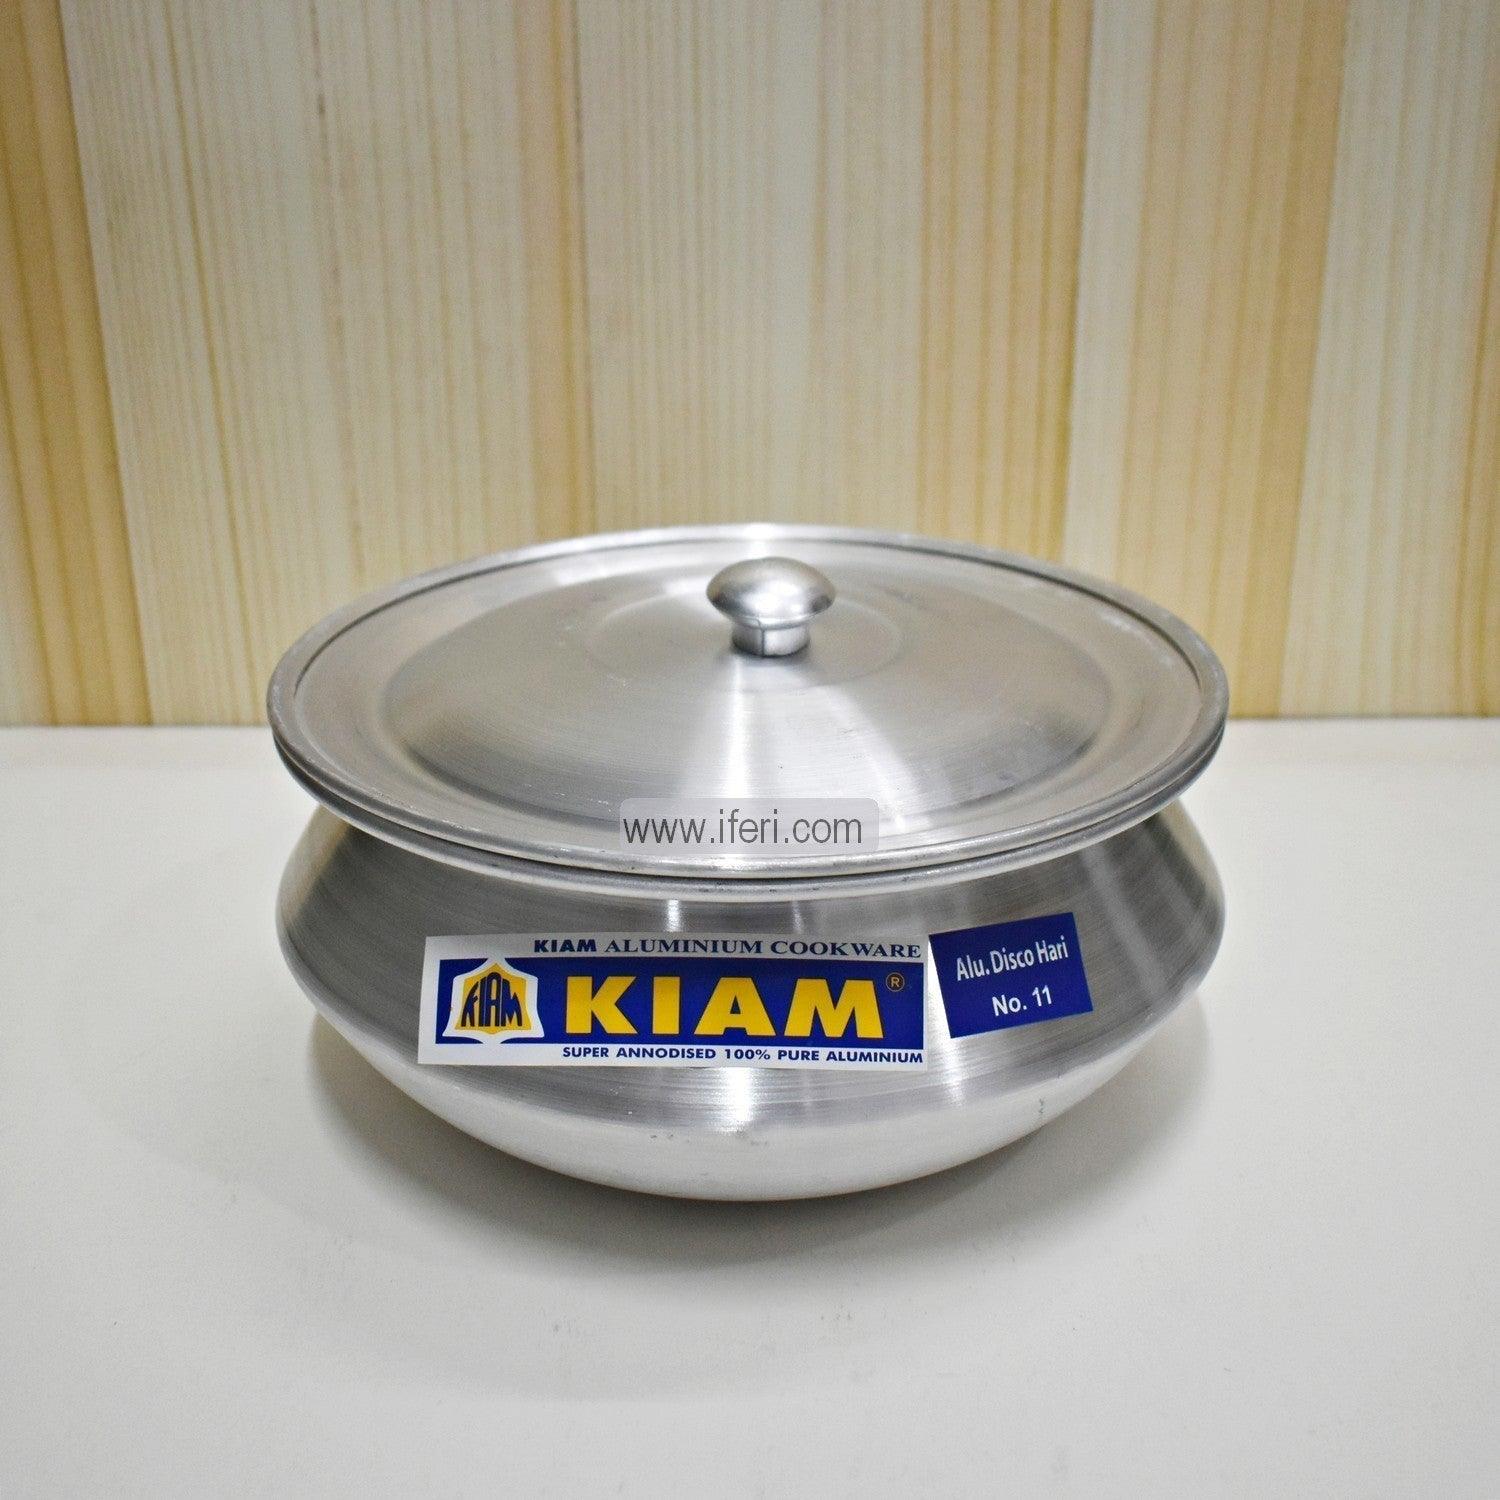 11 cm Kiam Aluminium Hari Cookware With Aluminium Lid BCG02221 Price in Bangladesh - iferi.com